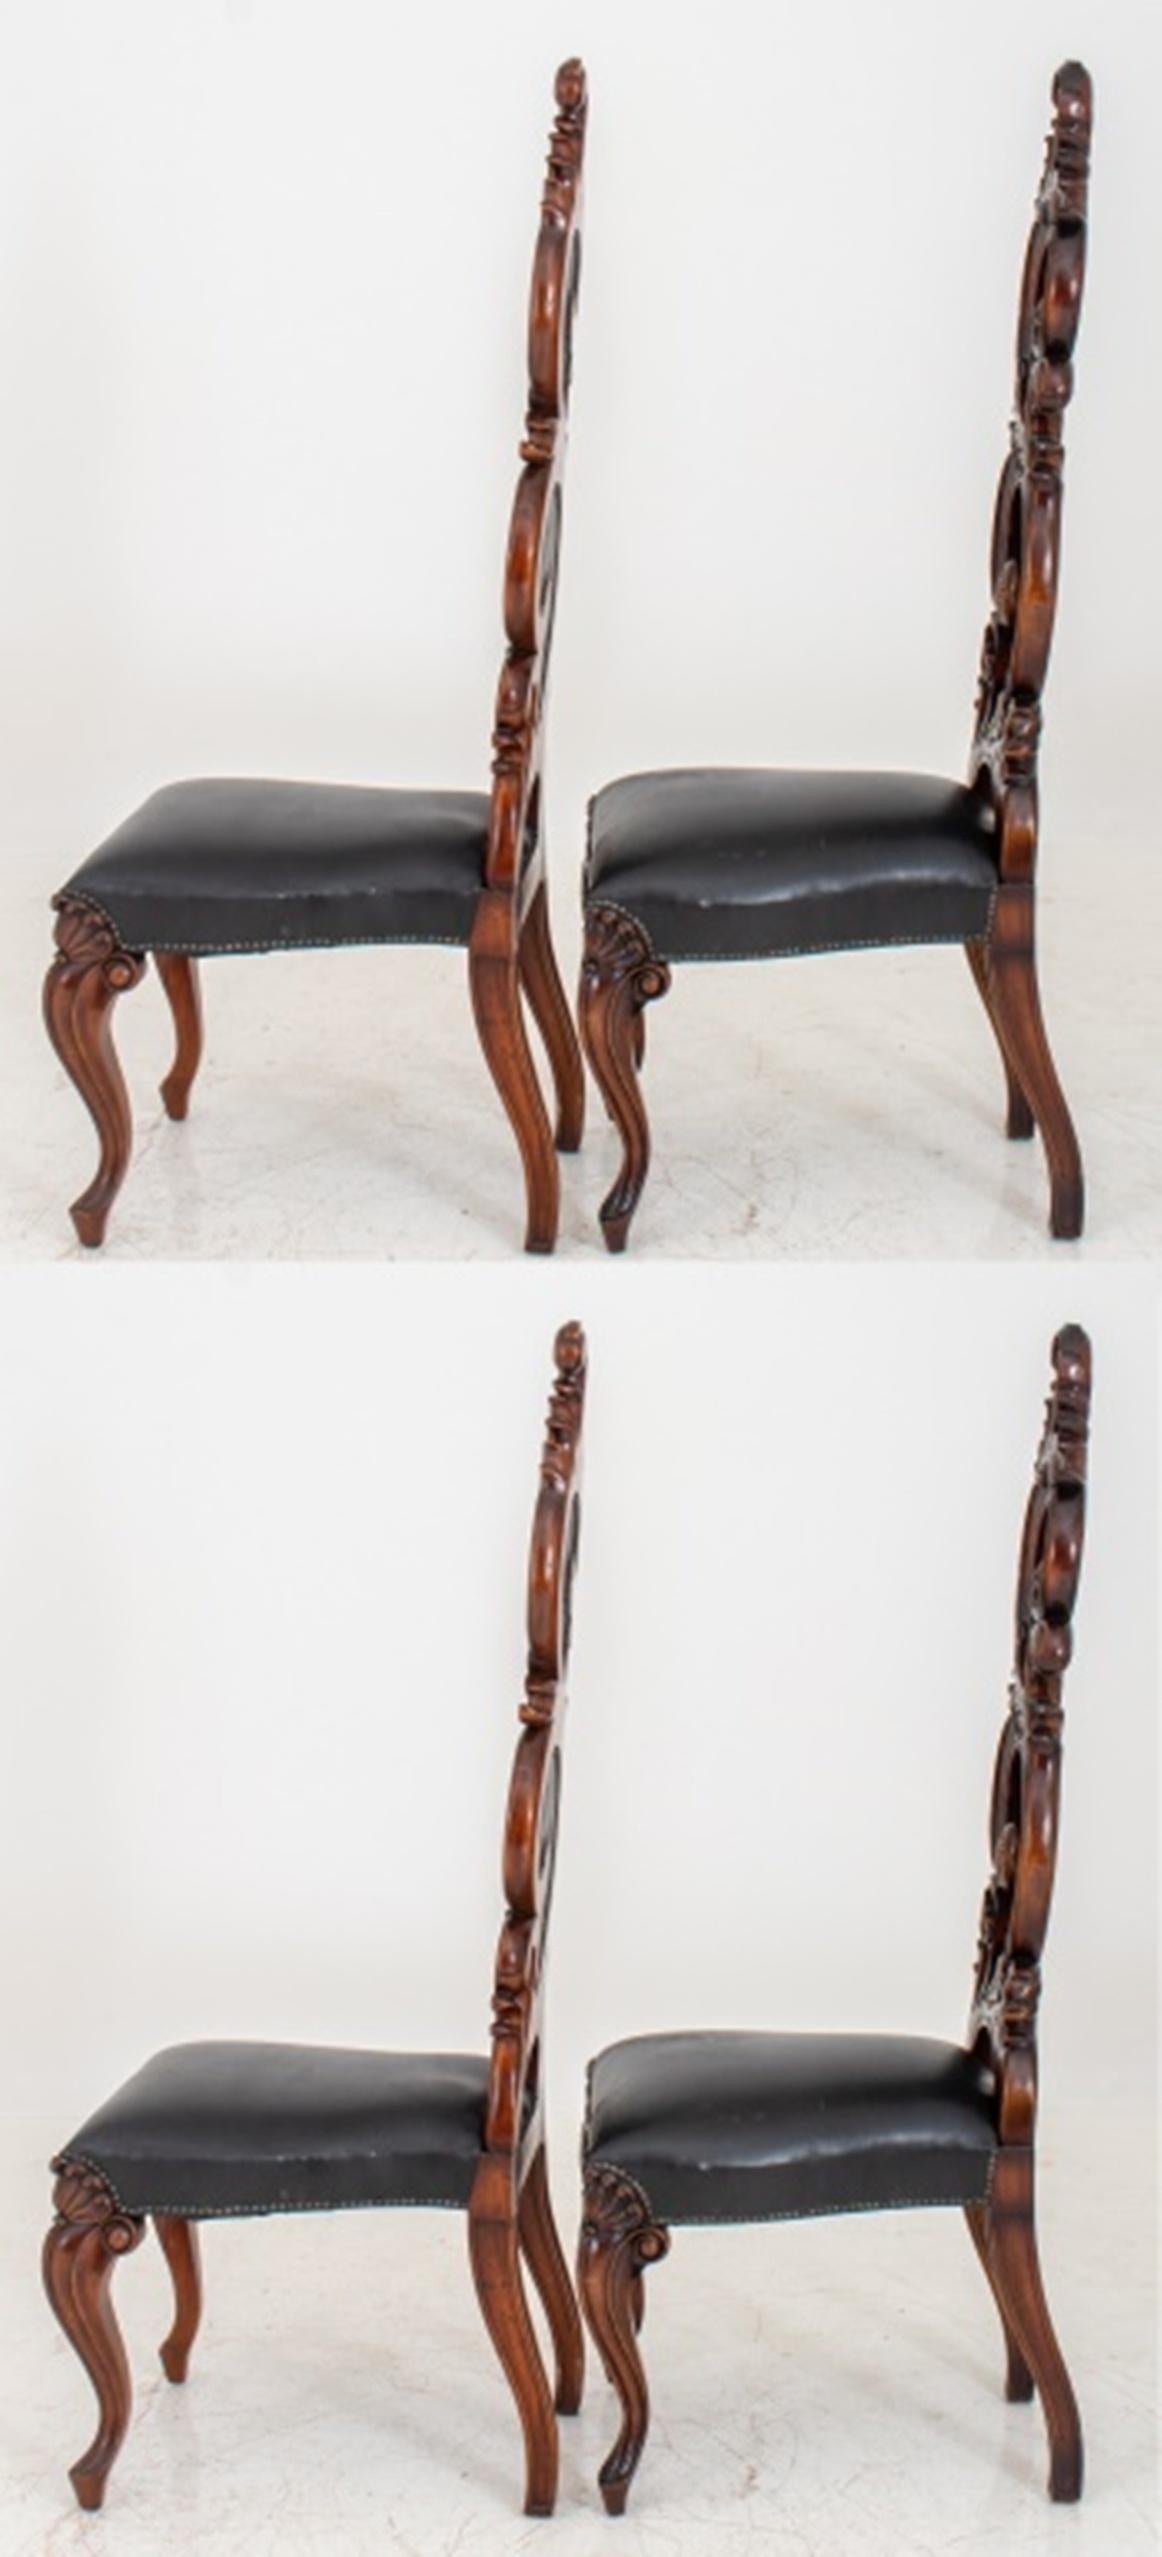 Quatre chaises de salle à manger Fantasy Rococo, le corps sculpté d'un motif d'acanthe tourbillonnant ponctué d'inserts en cuir noir et de clous martelés sur le dossier, l'assise tapissée de cuir noir, les pieds cabriole accentués